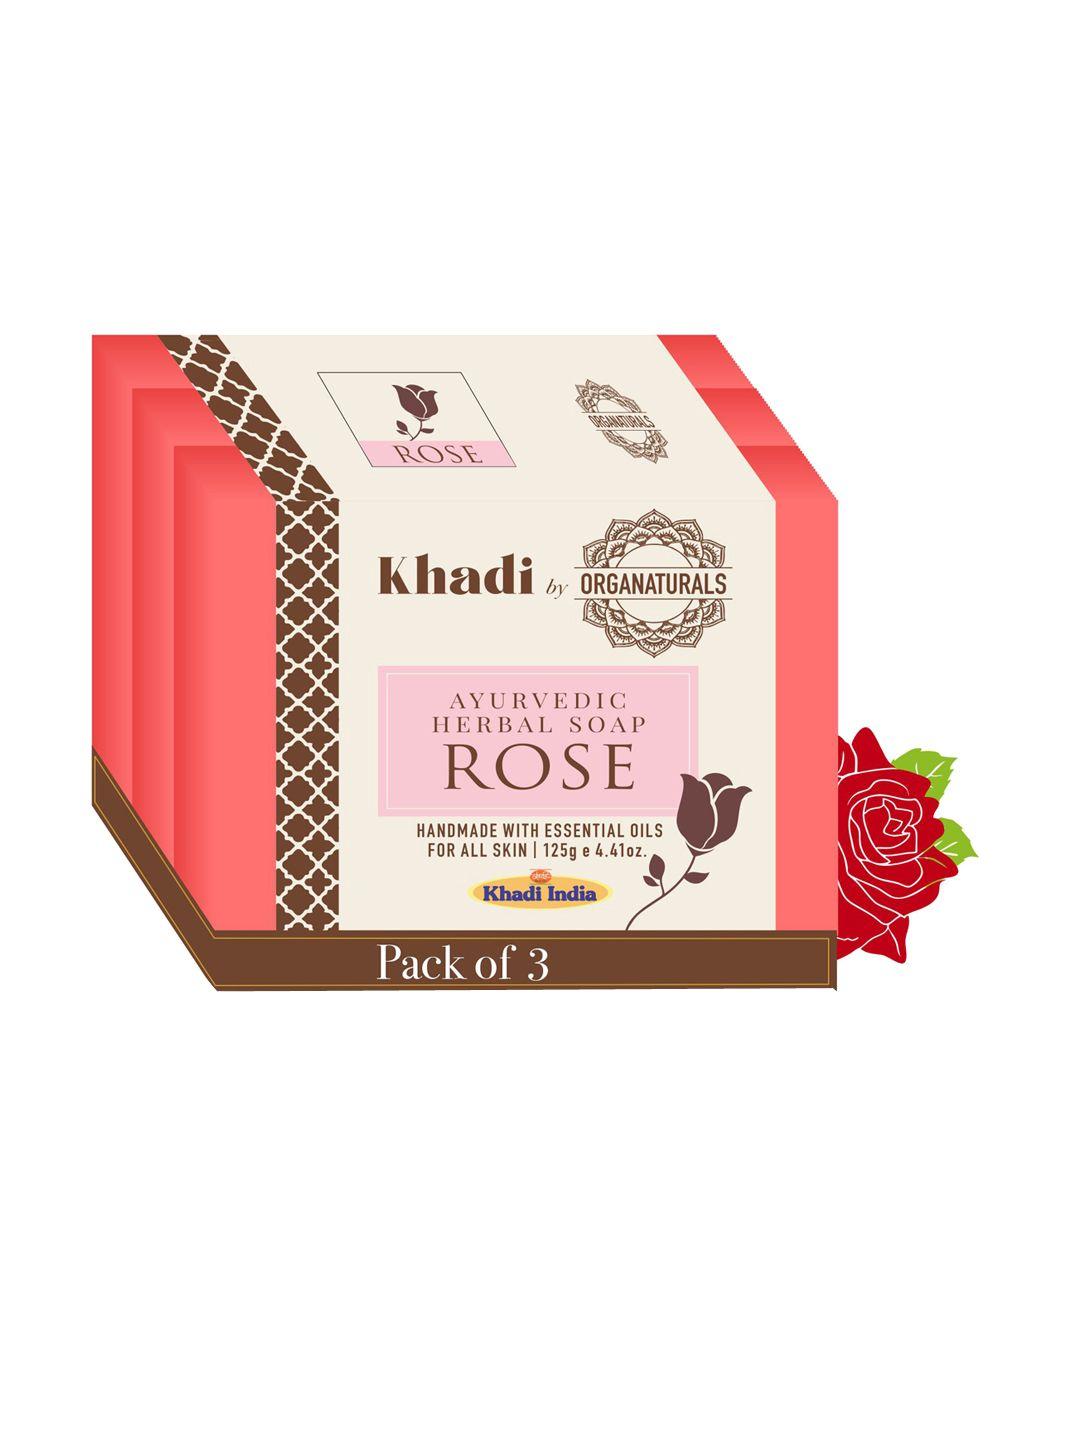 organaturals khadi set of 3 rose ayurvedic herbal soaps - 125g each